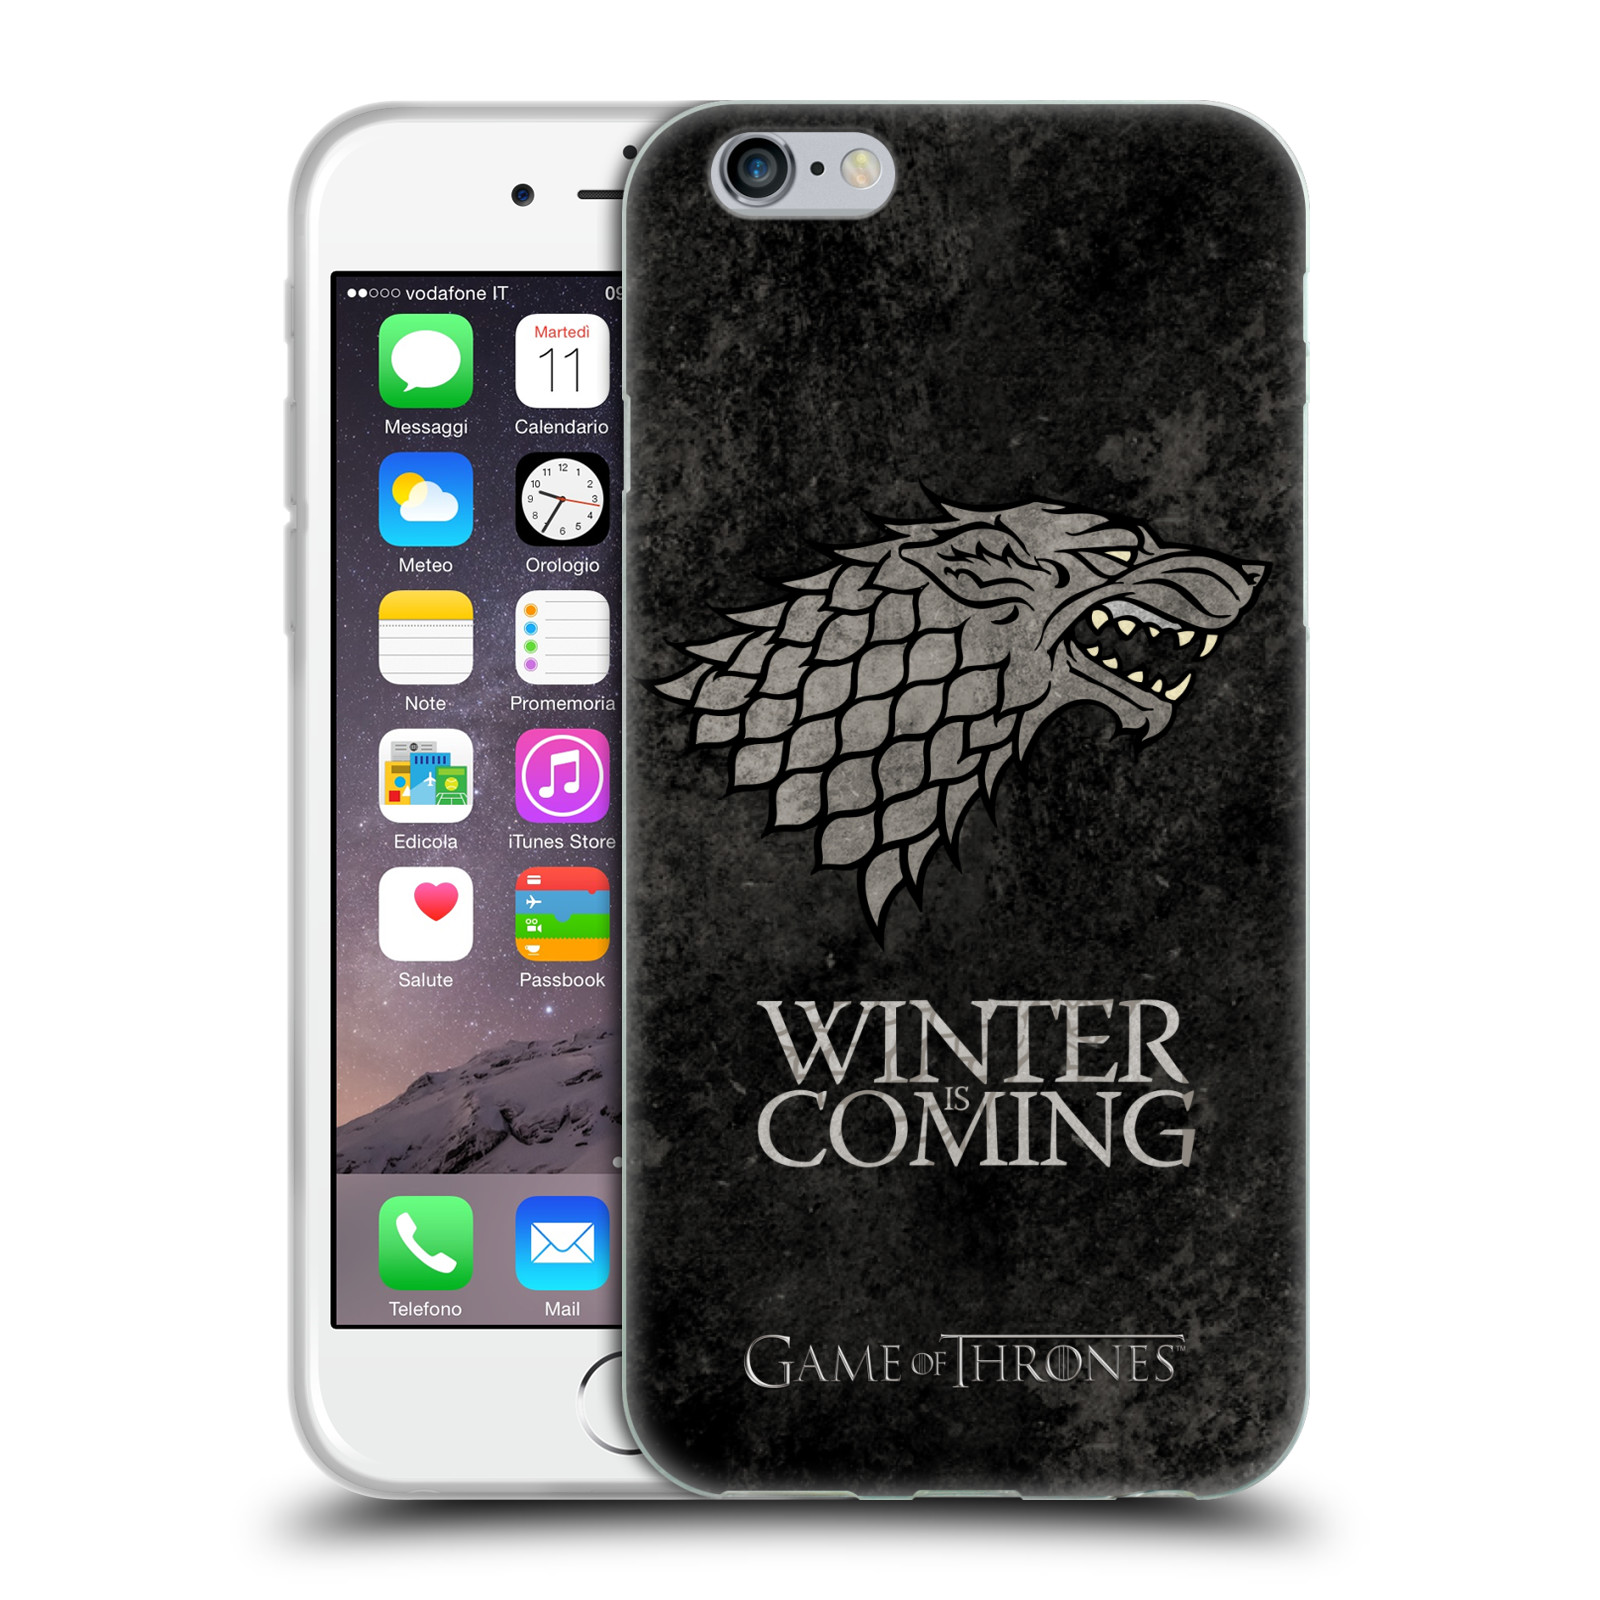 Silikonové pouzdro na mobil Apple iPhone 6 HEAD CASE Hra o trůny - Stark - Winter is coming (Silikonový kryt či obal na mobilní telefon s licencovaným motivem Hra o trůny / Game Of Thrones pro Apple iPhone 6)